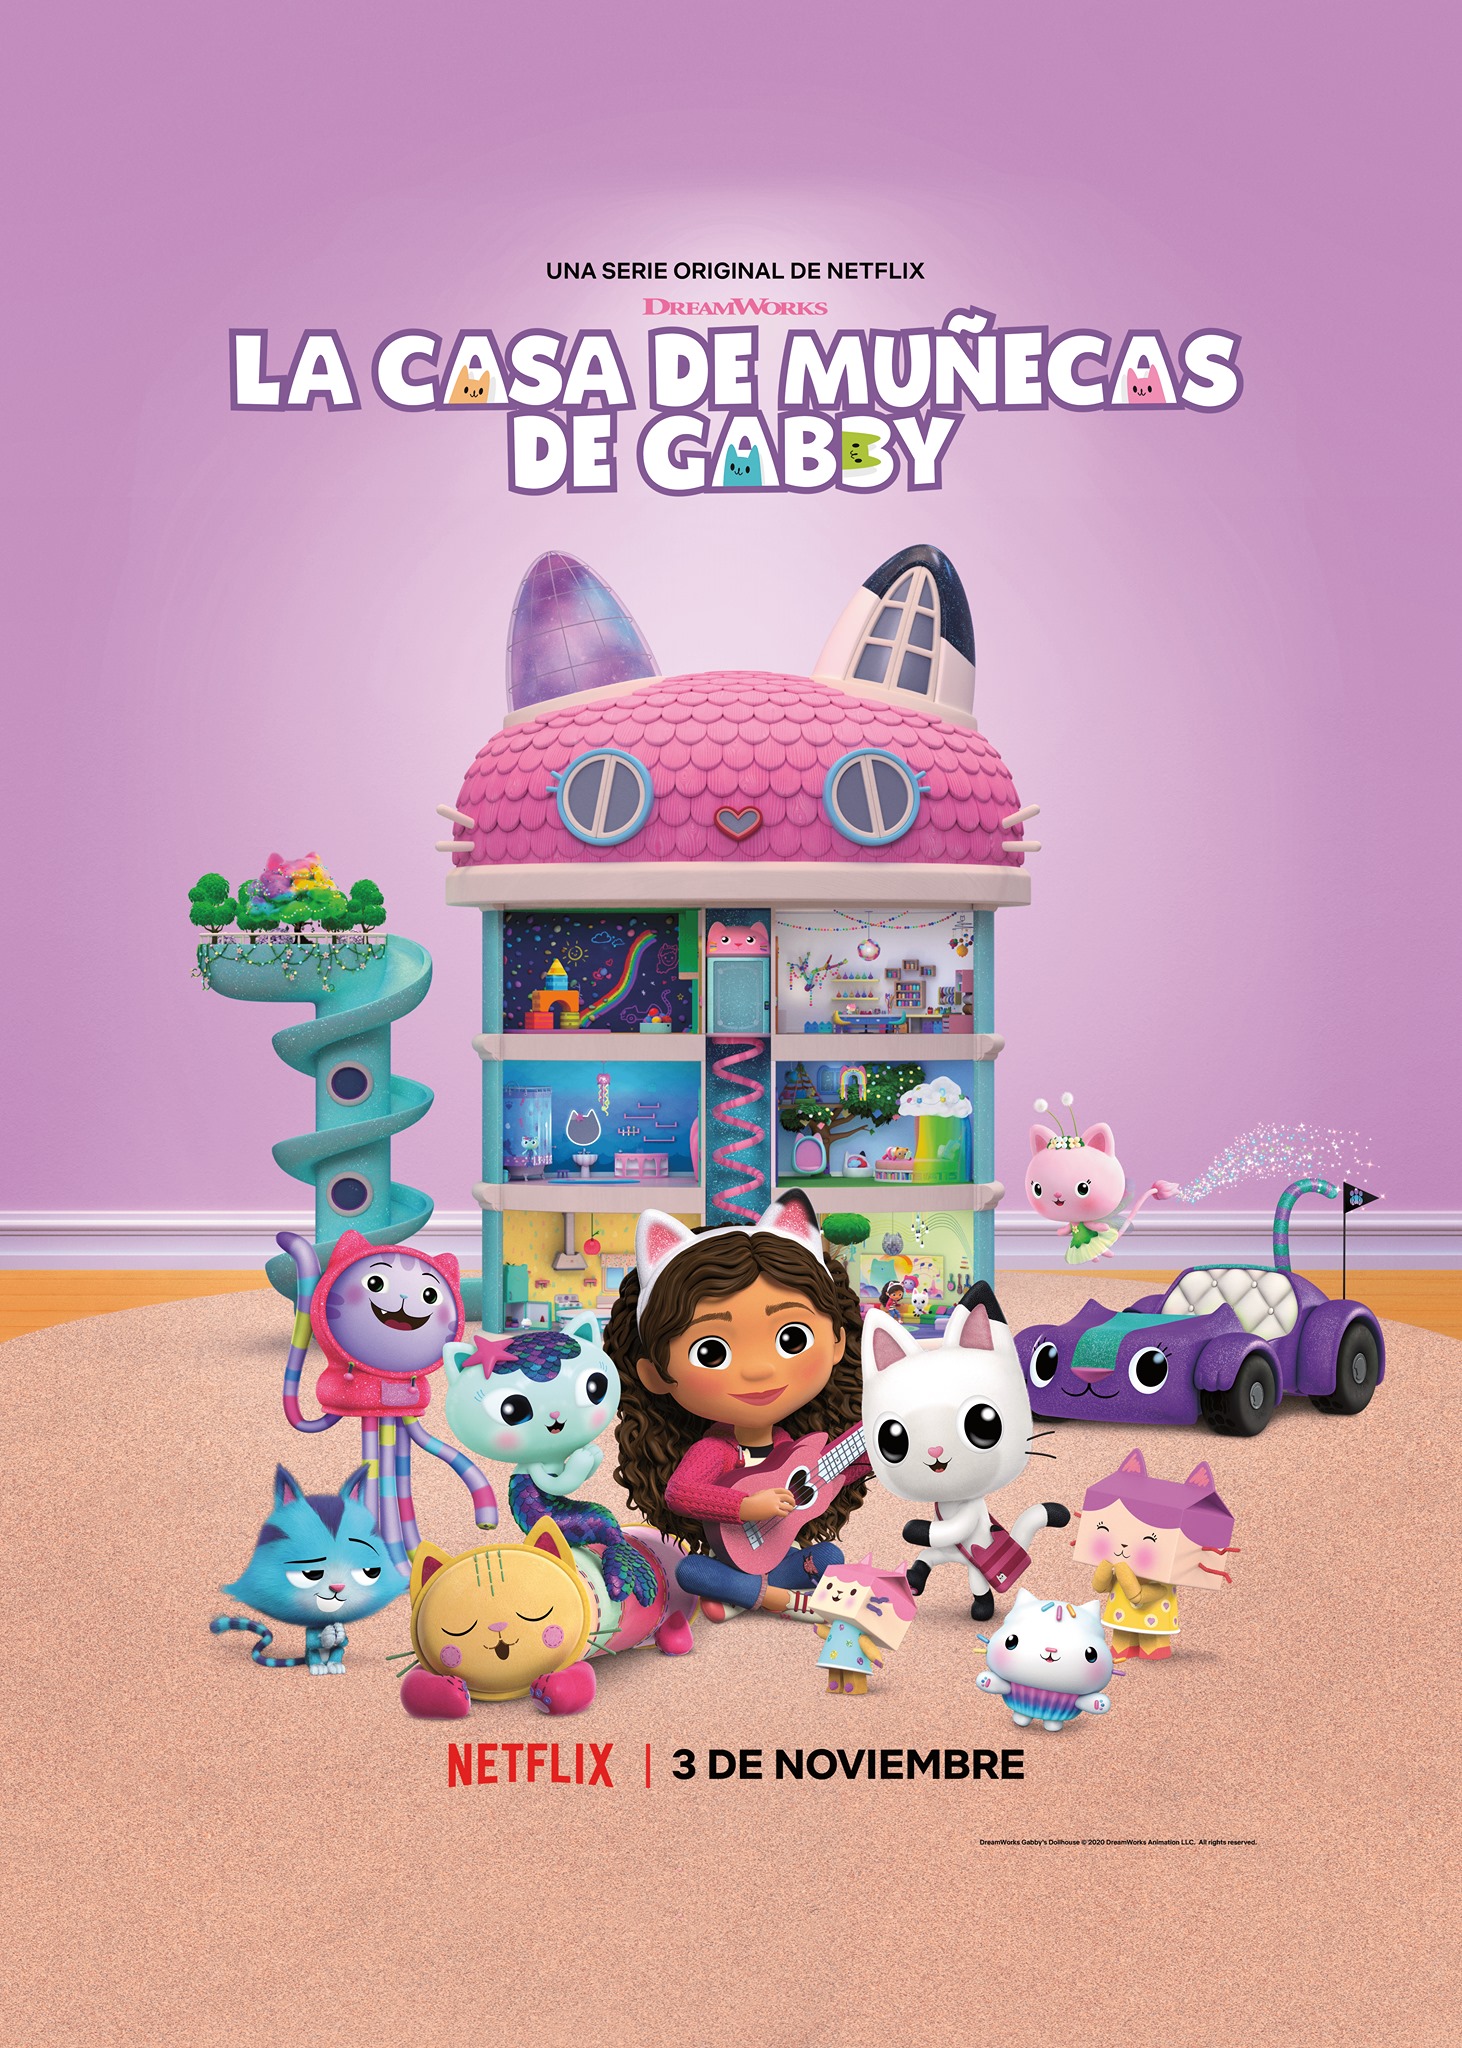 Gabby's DollHouse Casa De Muñecas